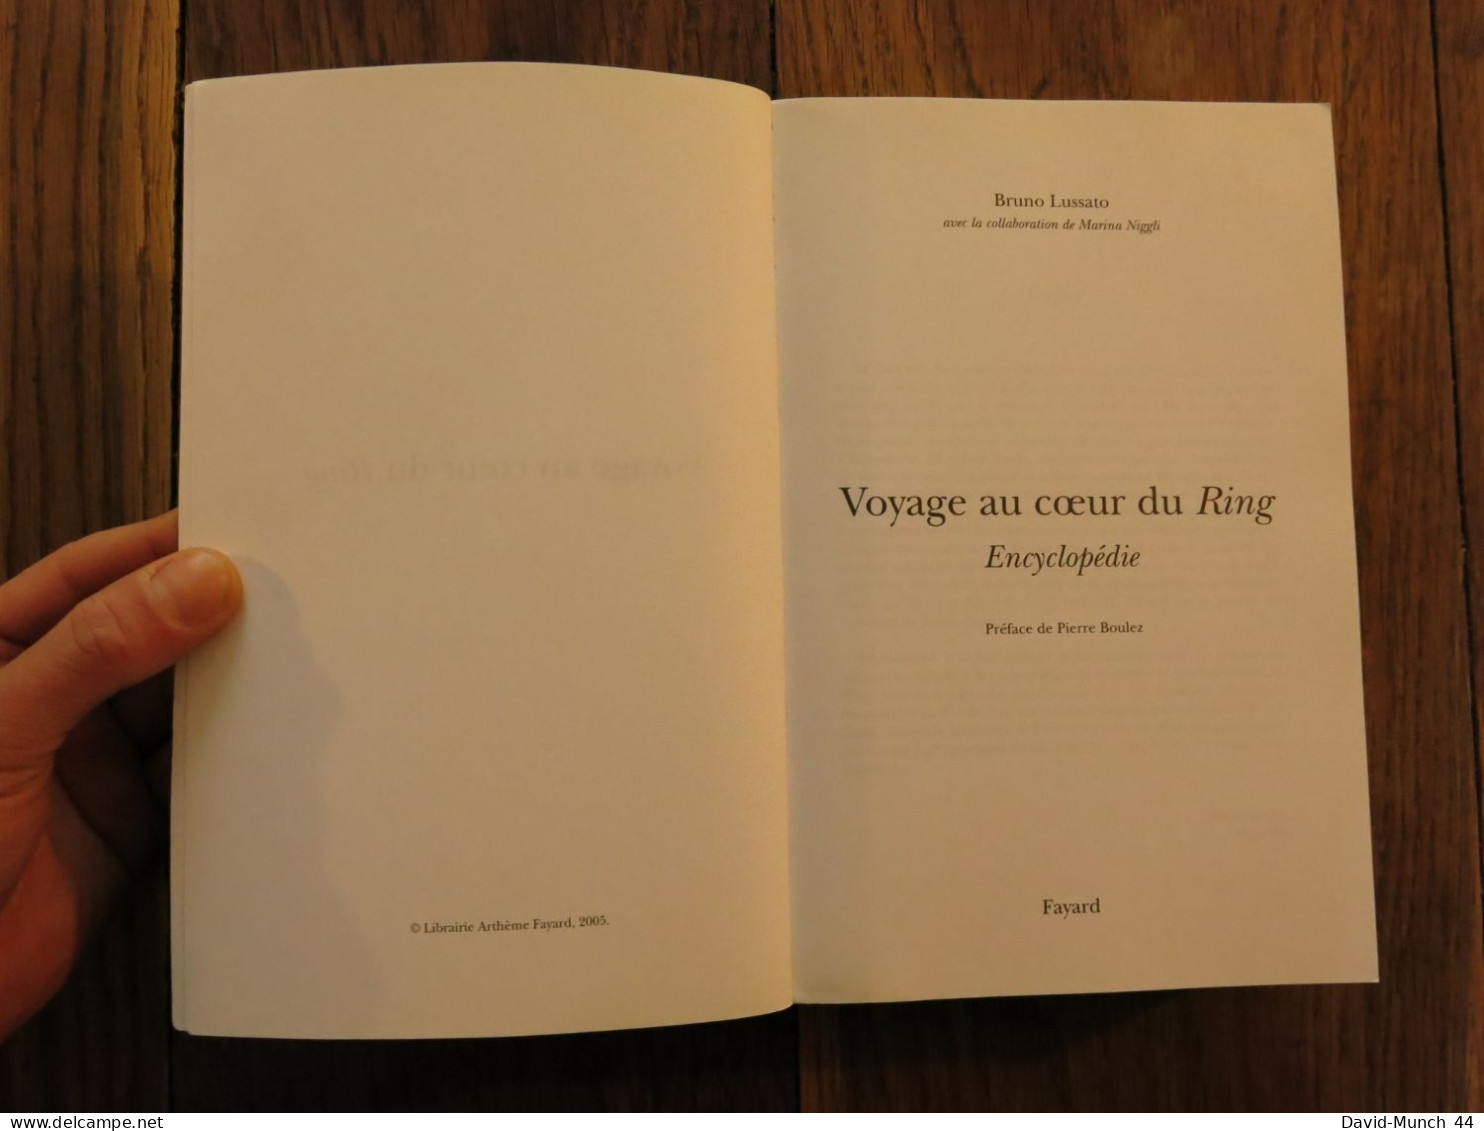 Voyage Au Cœur Du Ring, Wagner-L'anneau Du Nibelung, Encyclopédie De Bruno Lussato. Fayard. 2005 - Musik